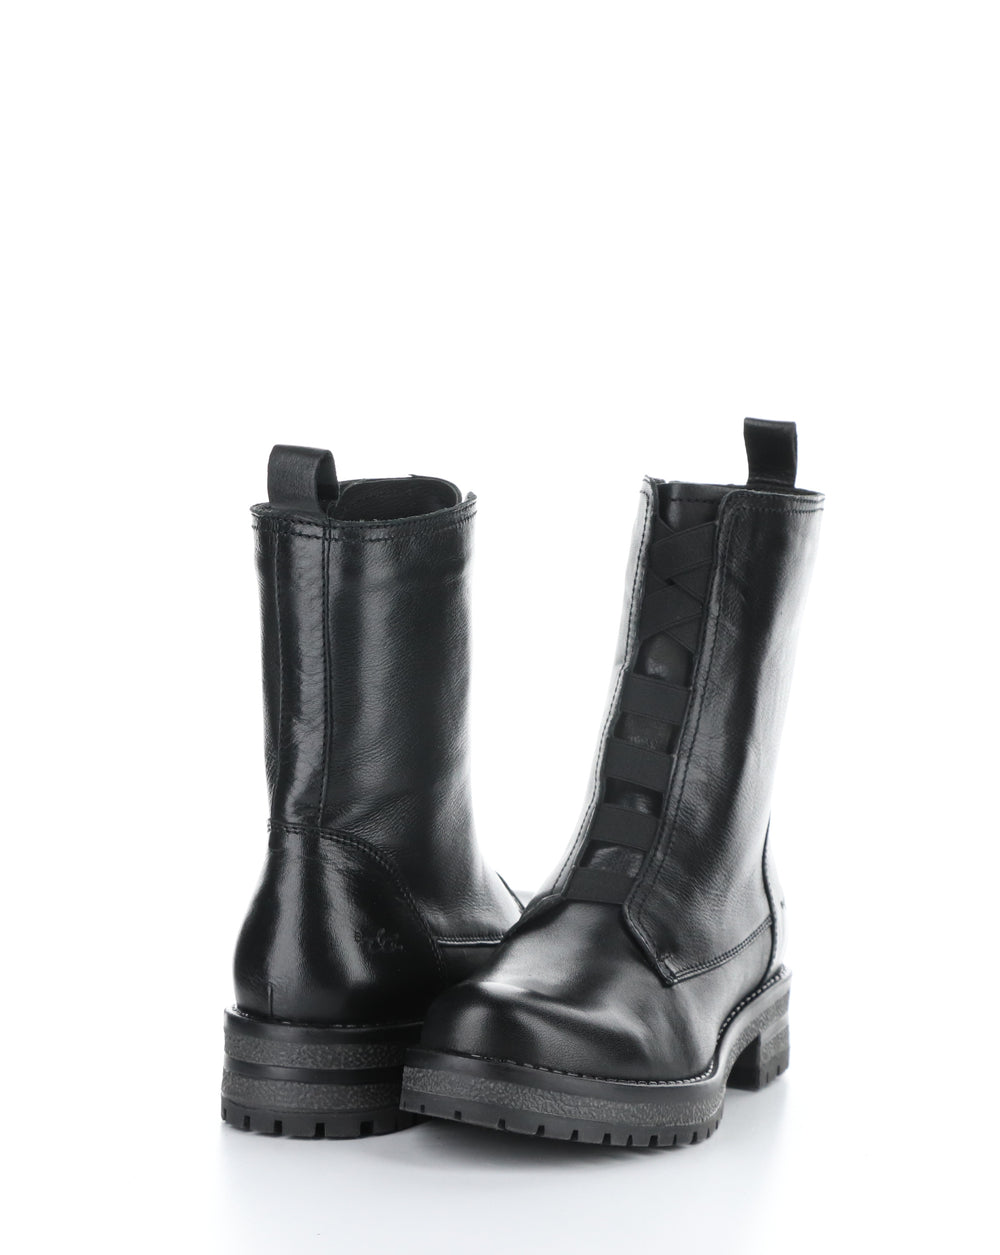 PATRAI BLACK Elasticated Boots